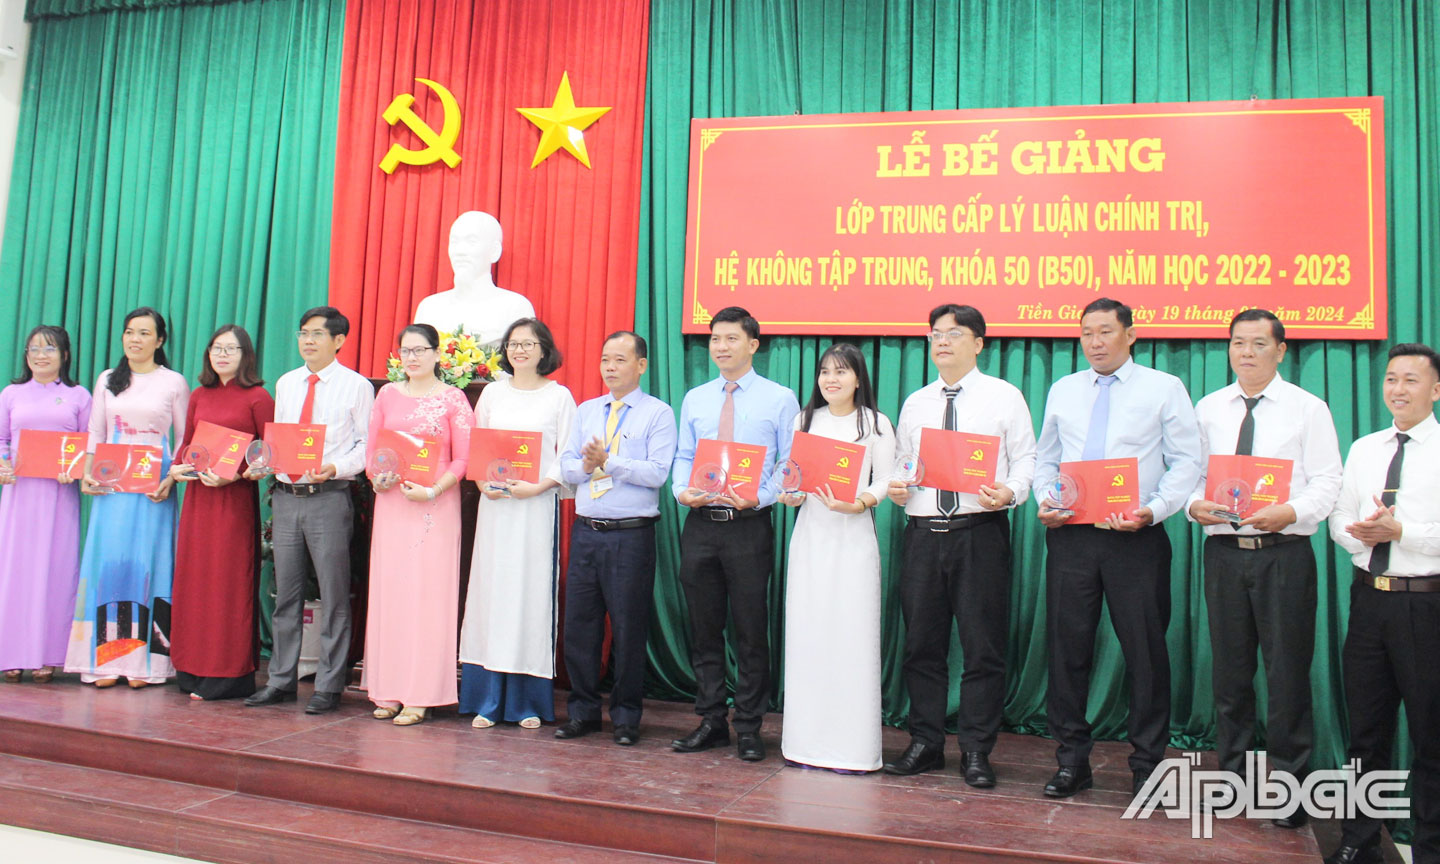 Phó Hiệu trưởng Trường Chính trị tỉnh Tiền Giang Nguyễn Văn Sơn trao Bằng tốt nghiệp Trung cấp LLCT hệ không tập trung, năm học 2022 - 2023.